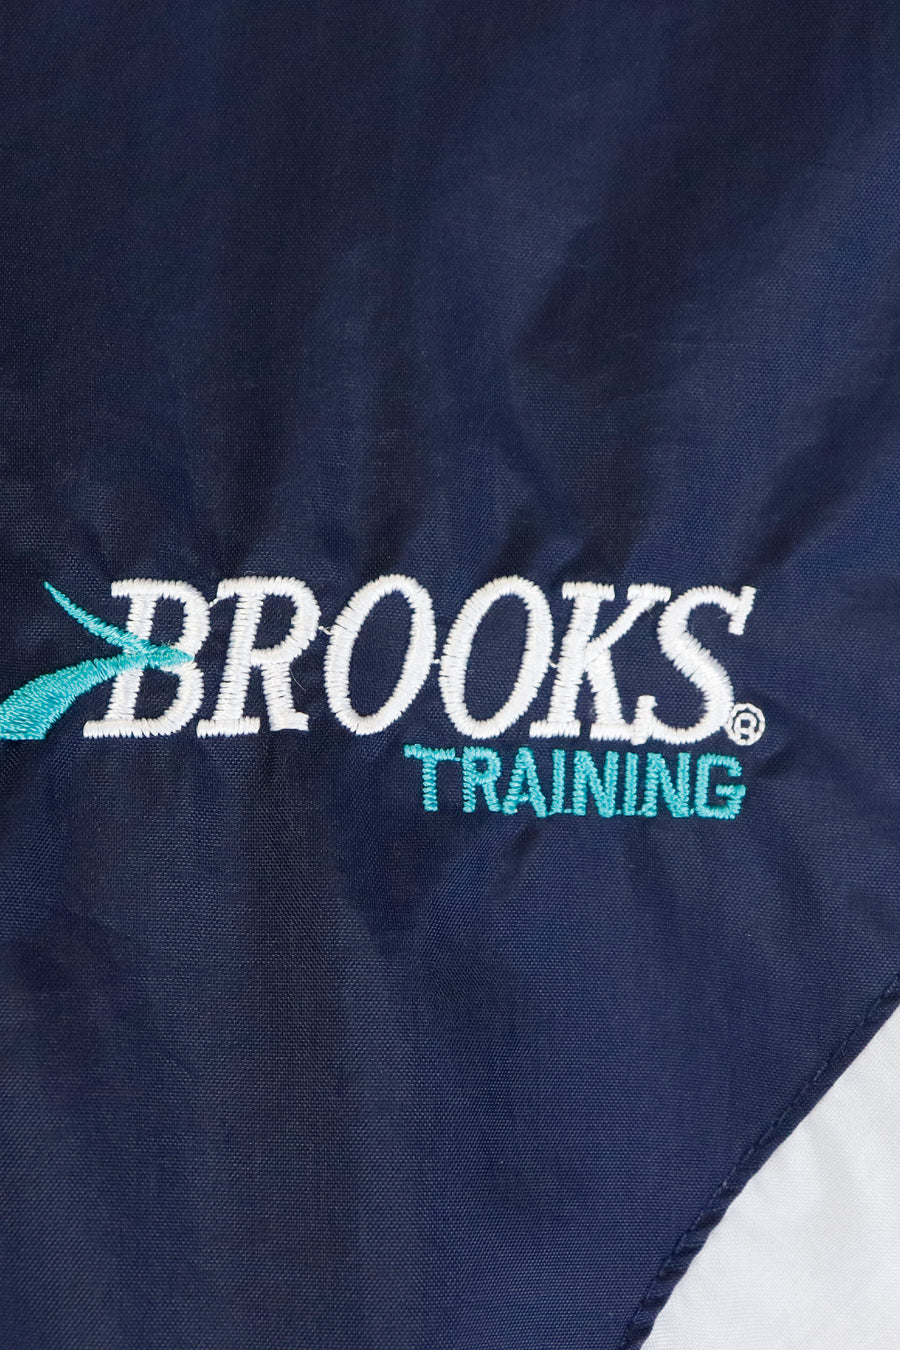 Vintage Brooks Training Tri-Colour Windbreaker Sz S